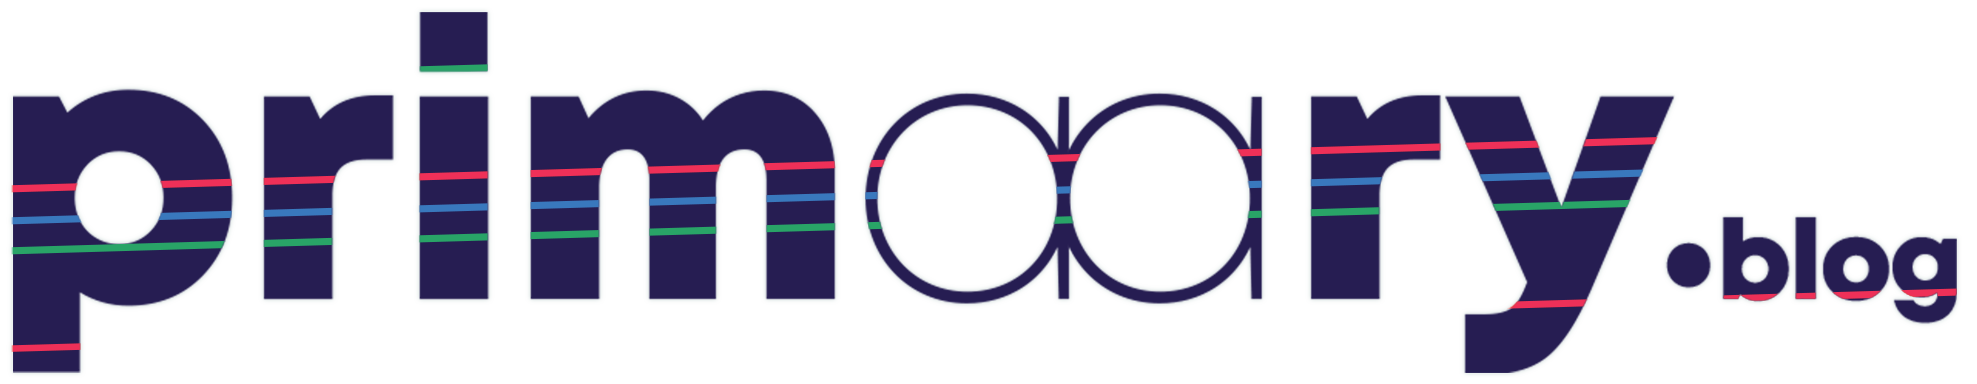 logo avec bandes colorées